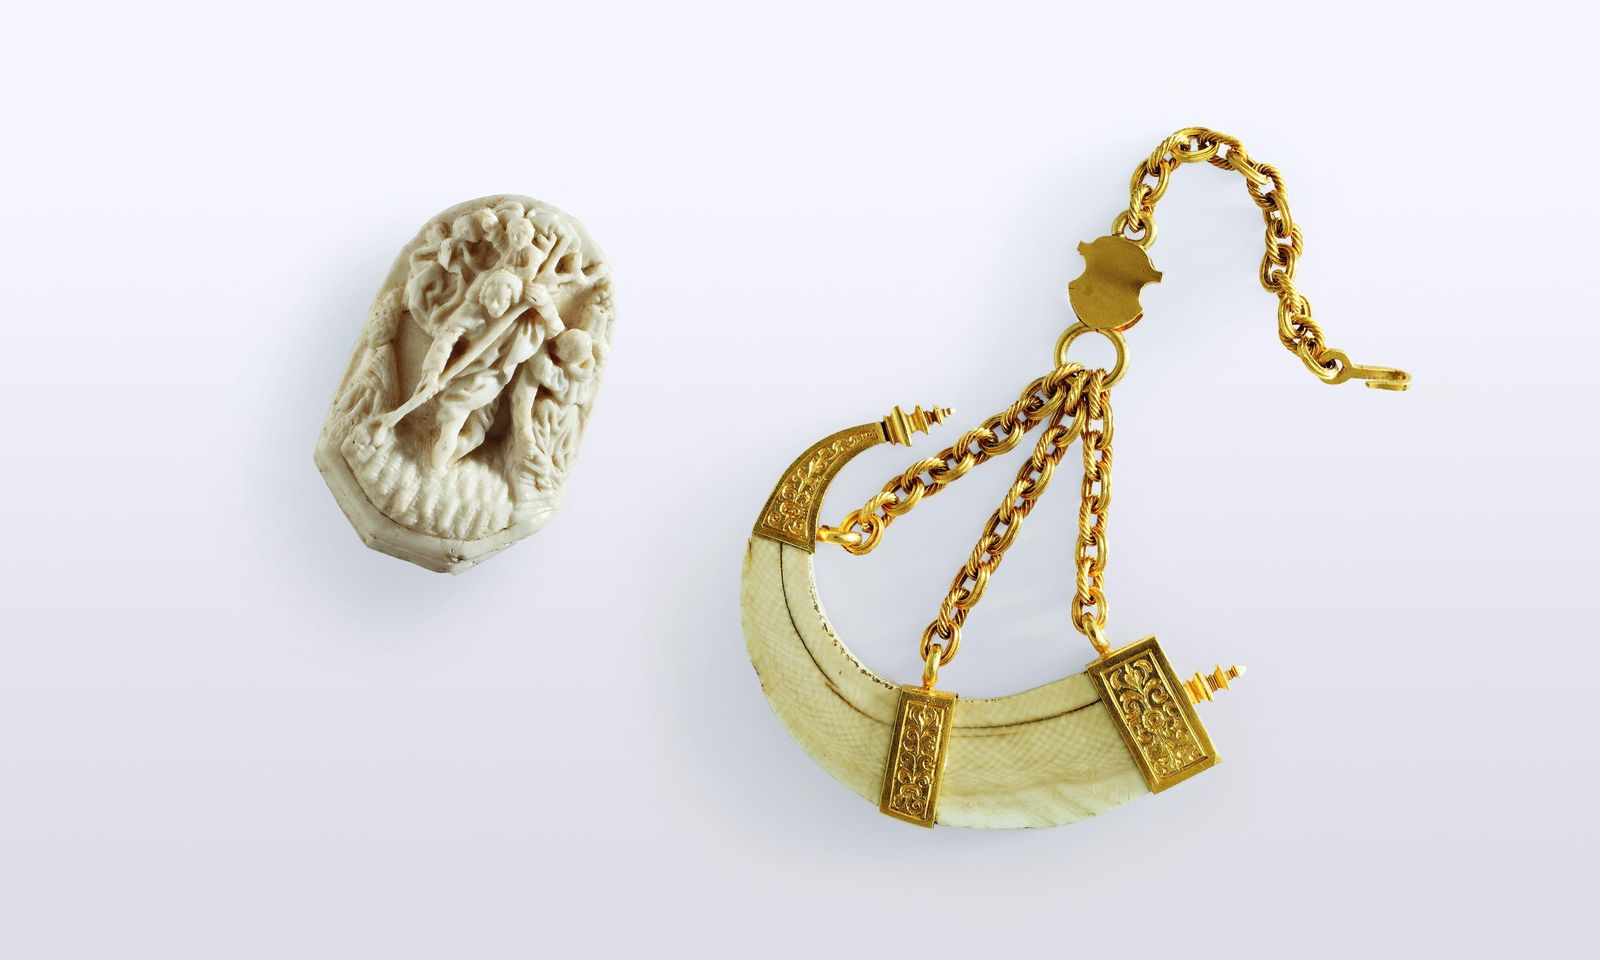 Anhänger in Form eines Pulverhorns aus Elfenbein mit goldener Fassung und dreiteiliger Goldkette. ("Wildschweinzahn")